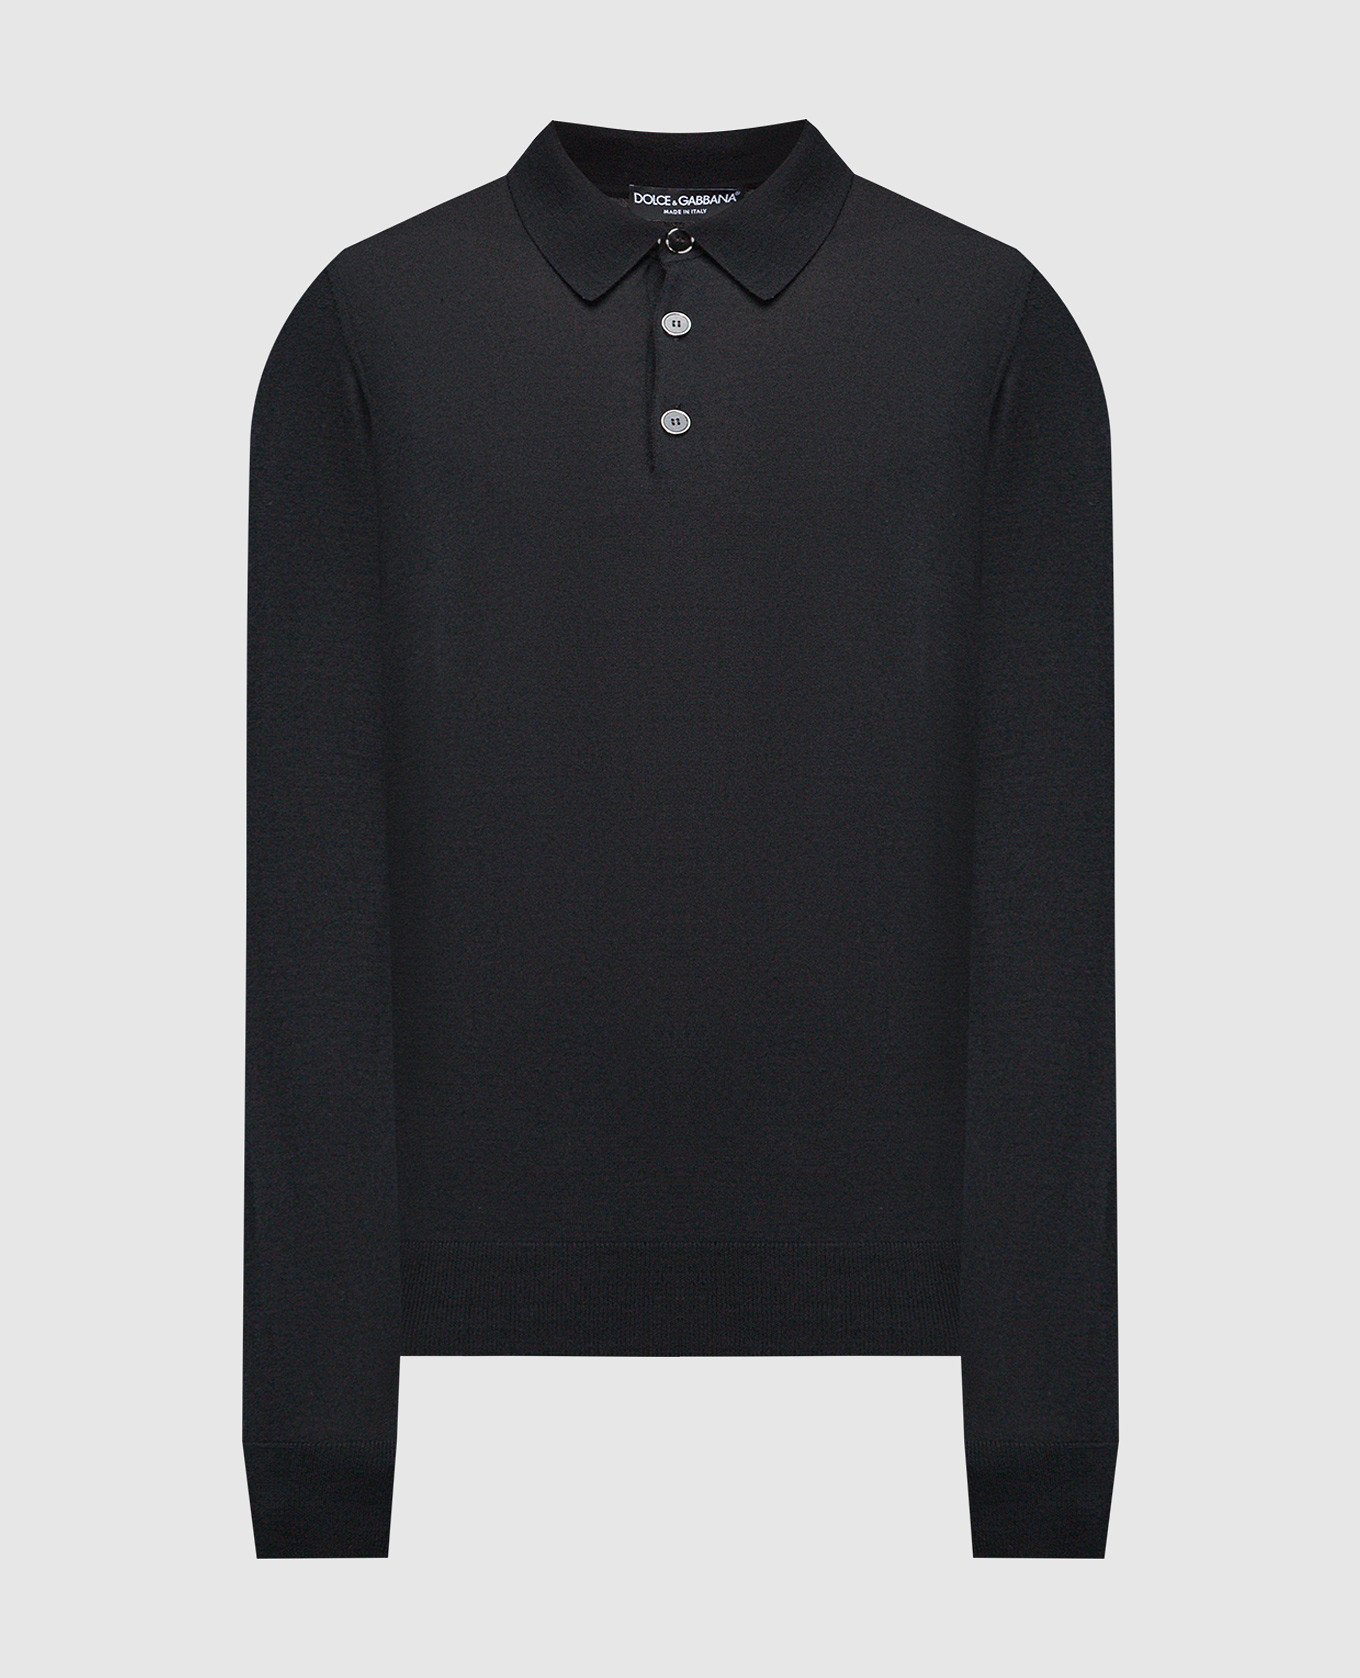 Black cashmere polo shirt